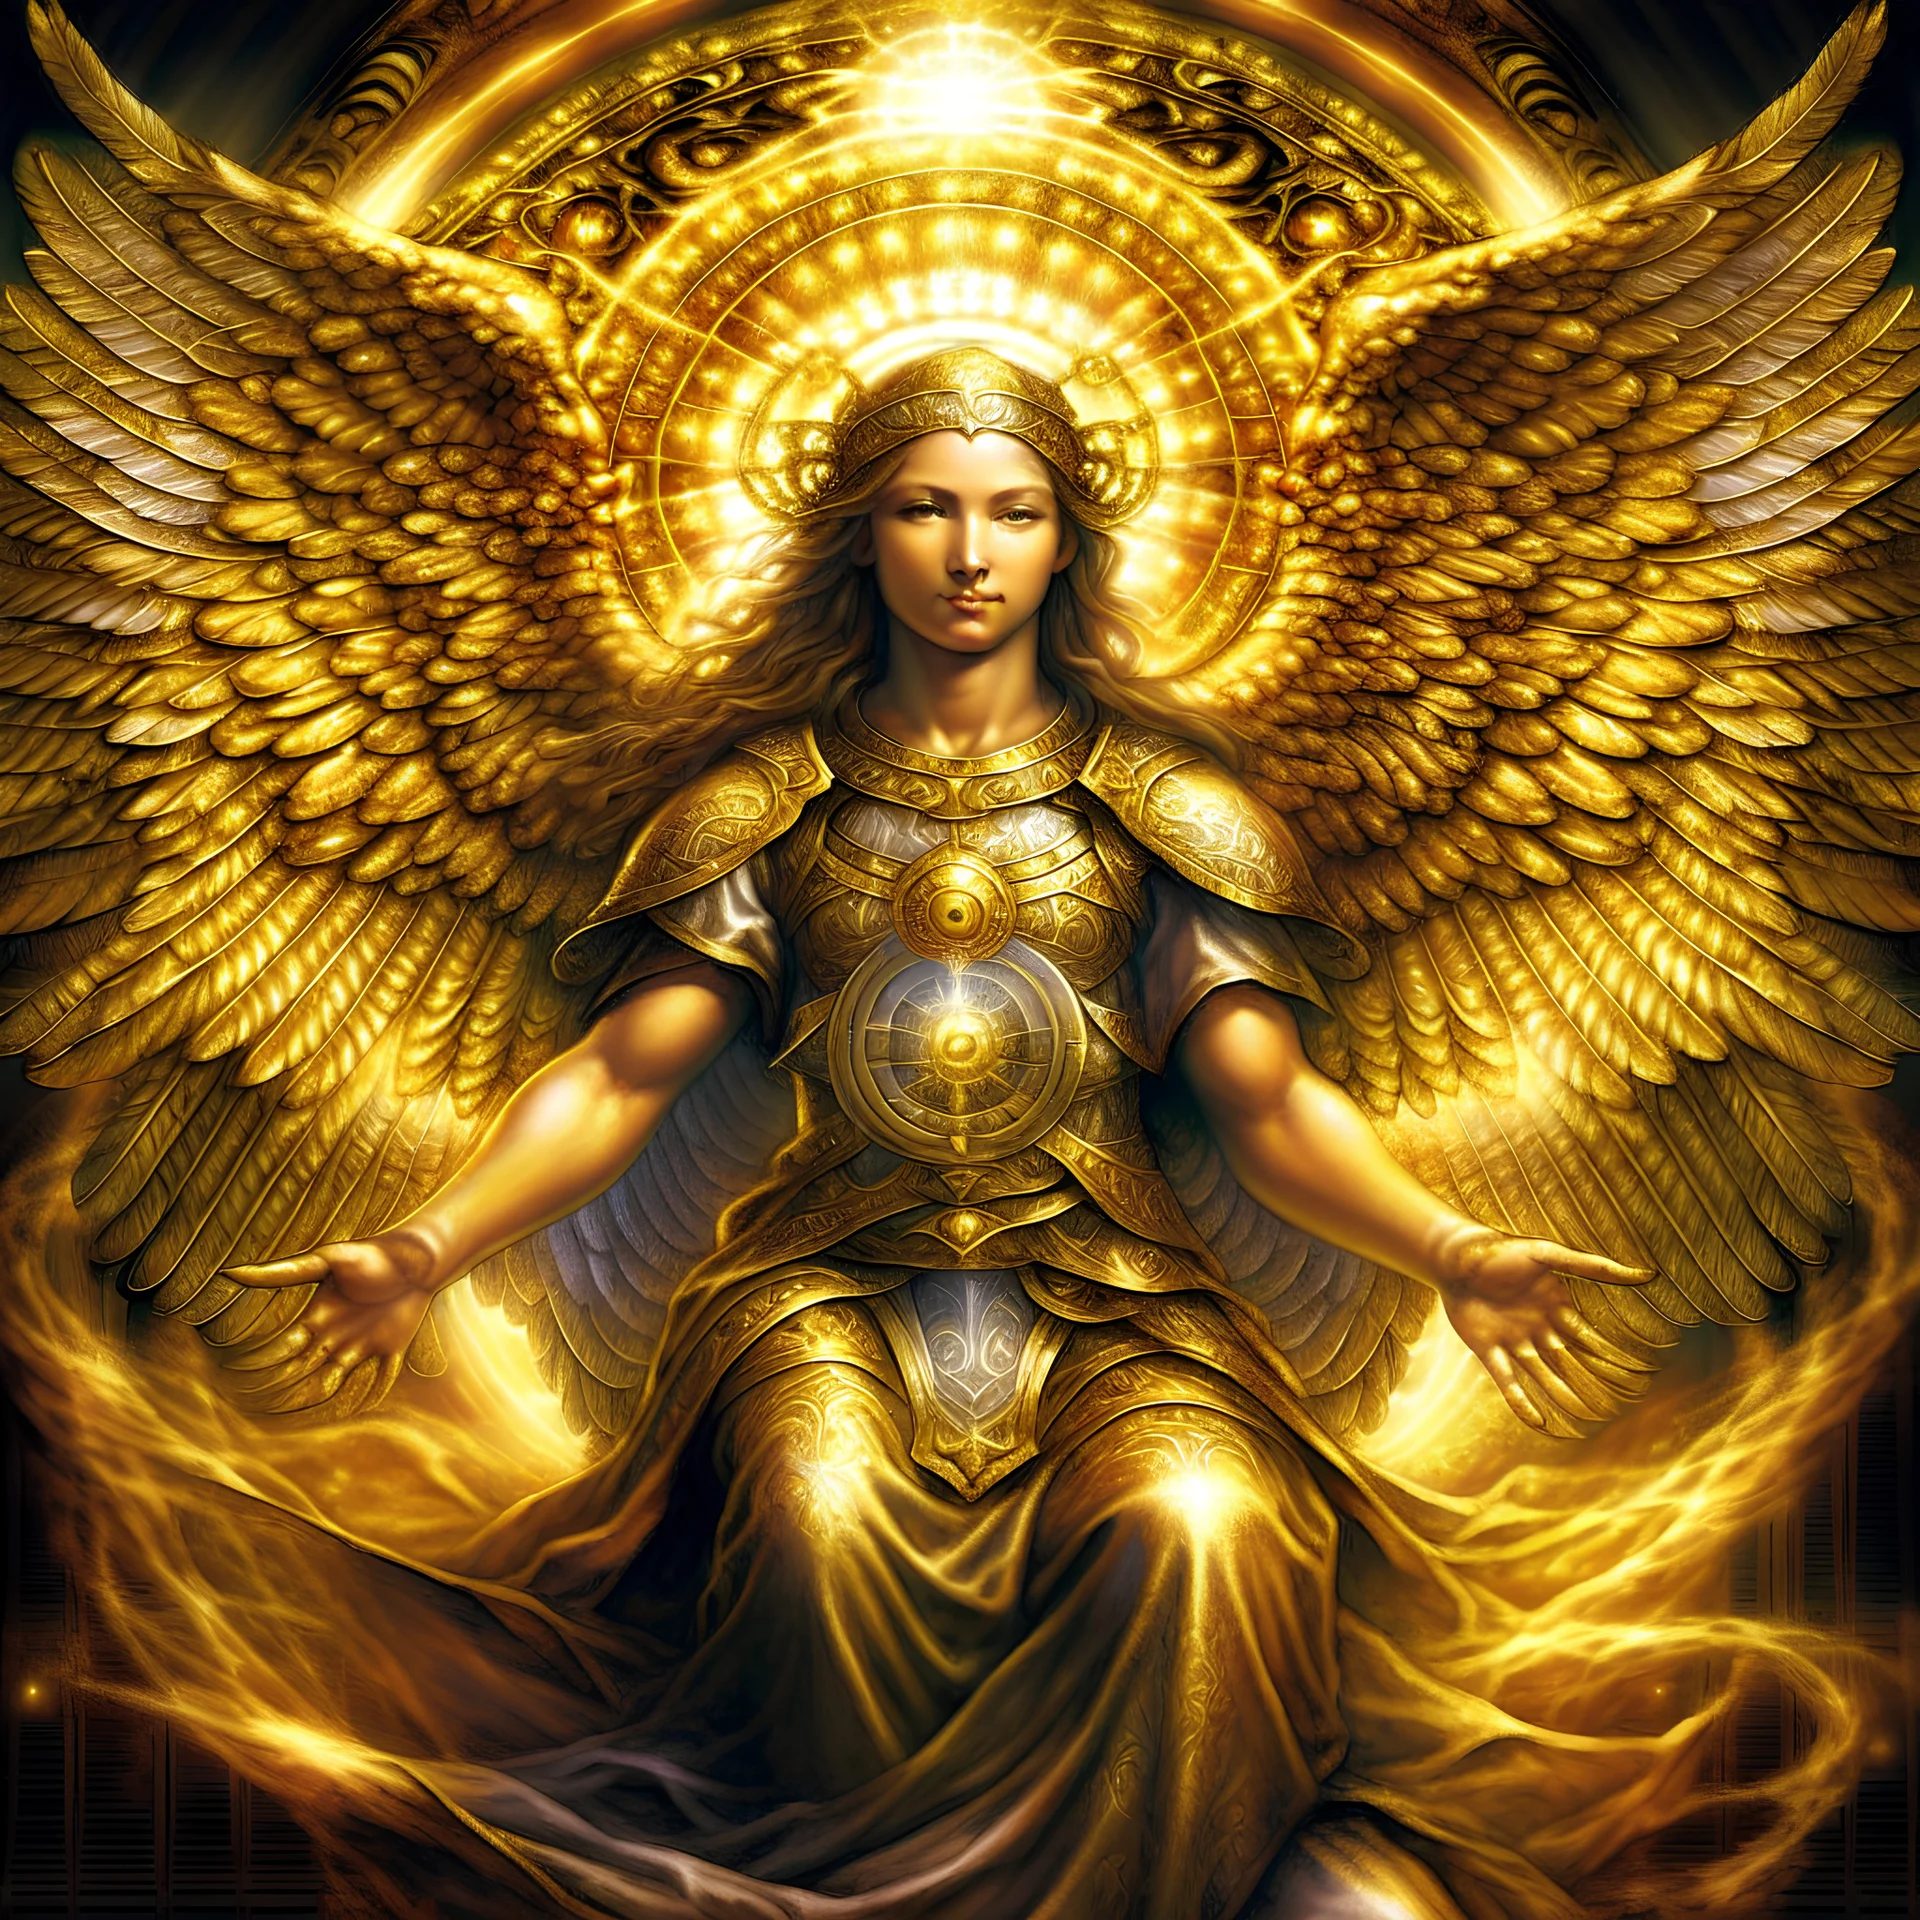 archangel metatron